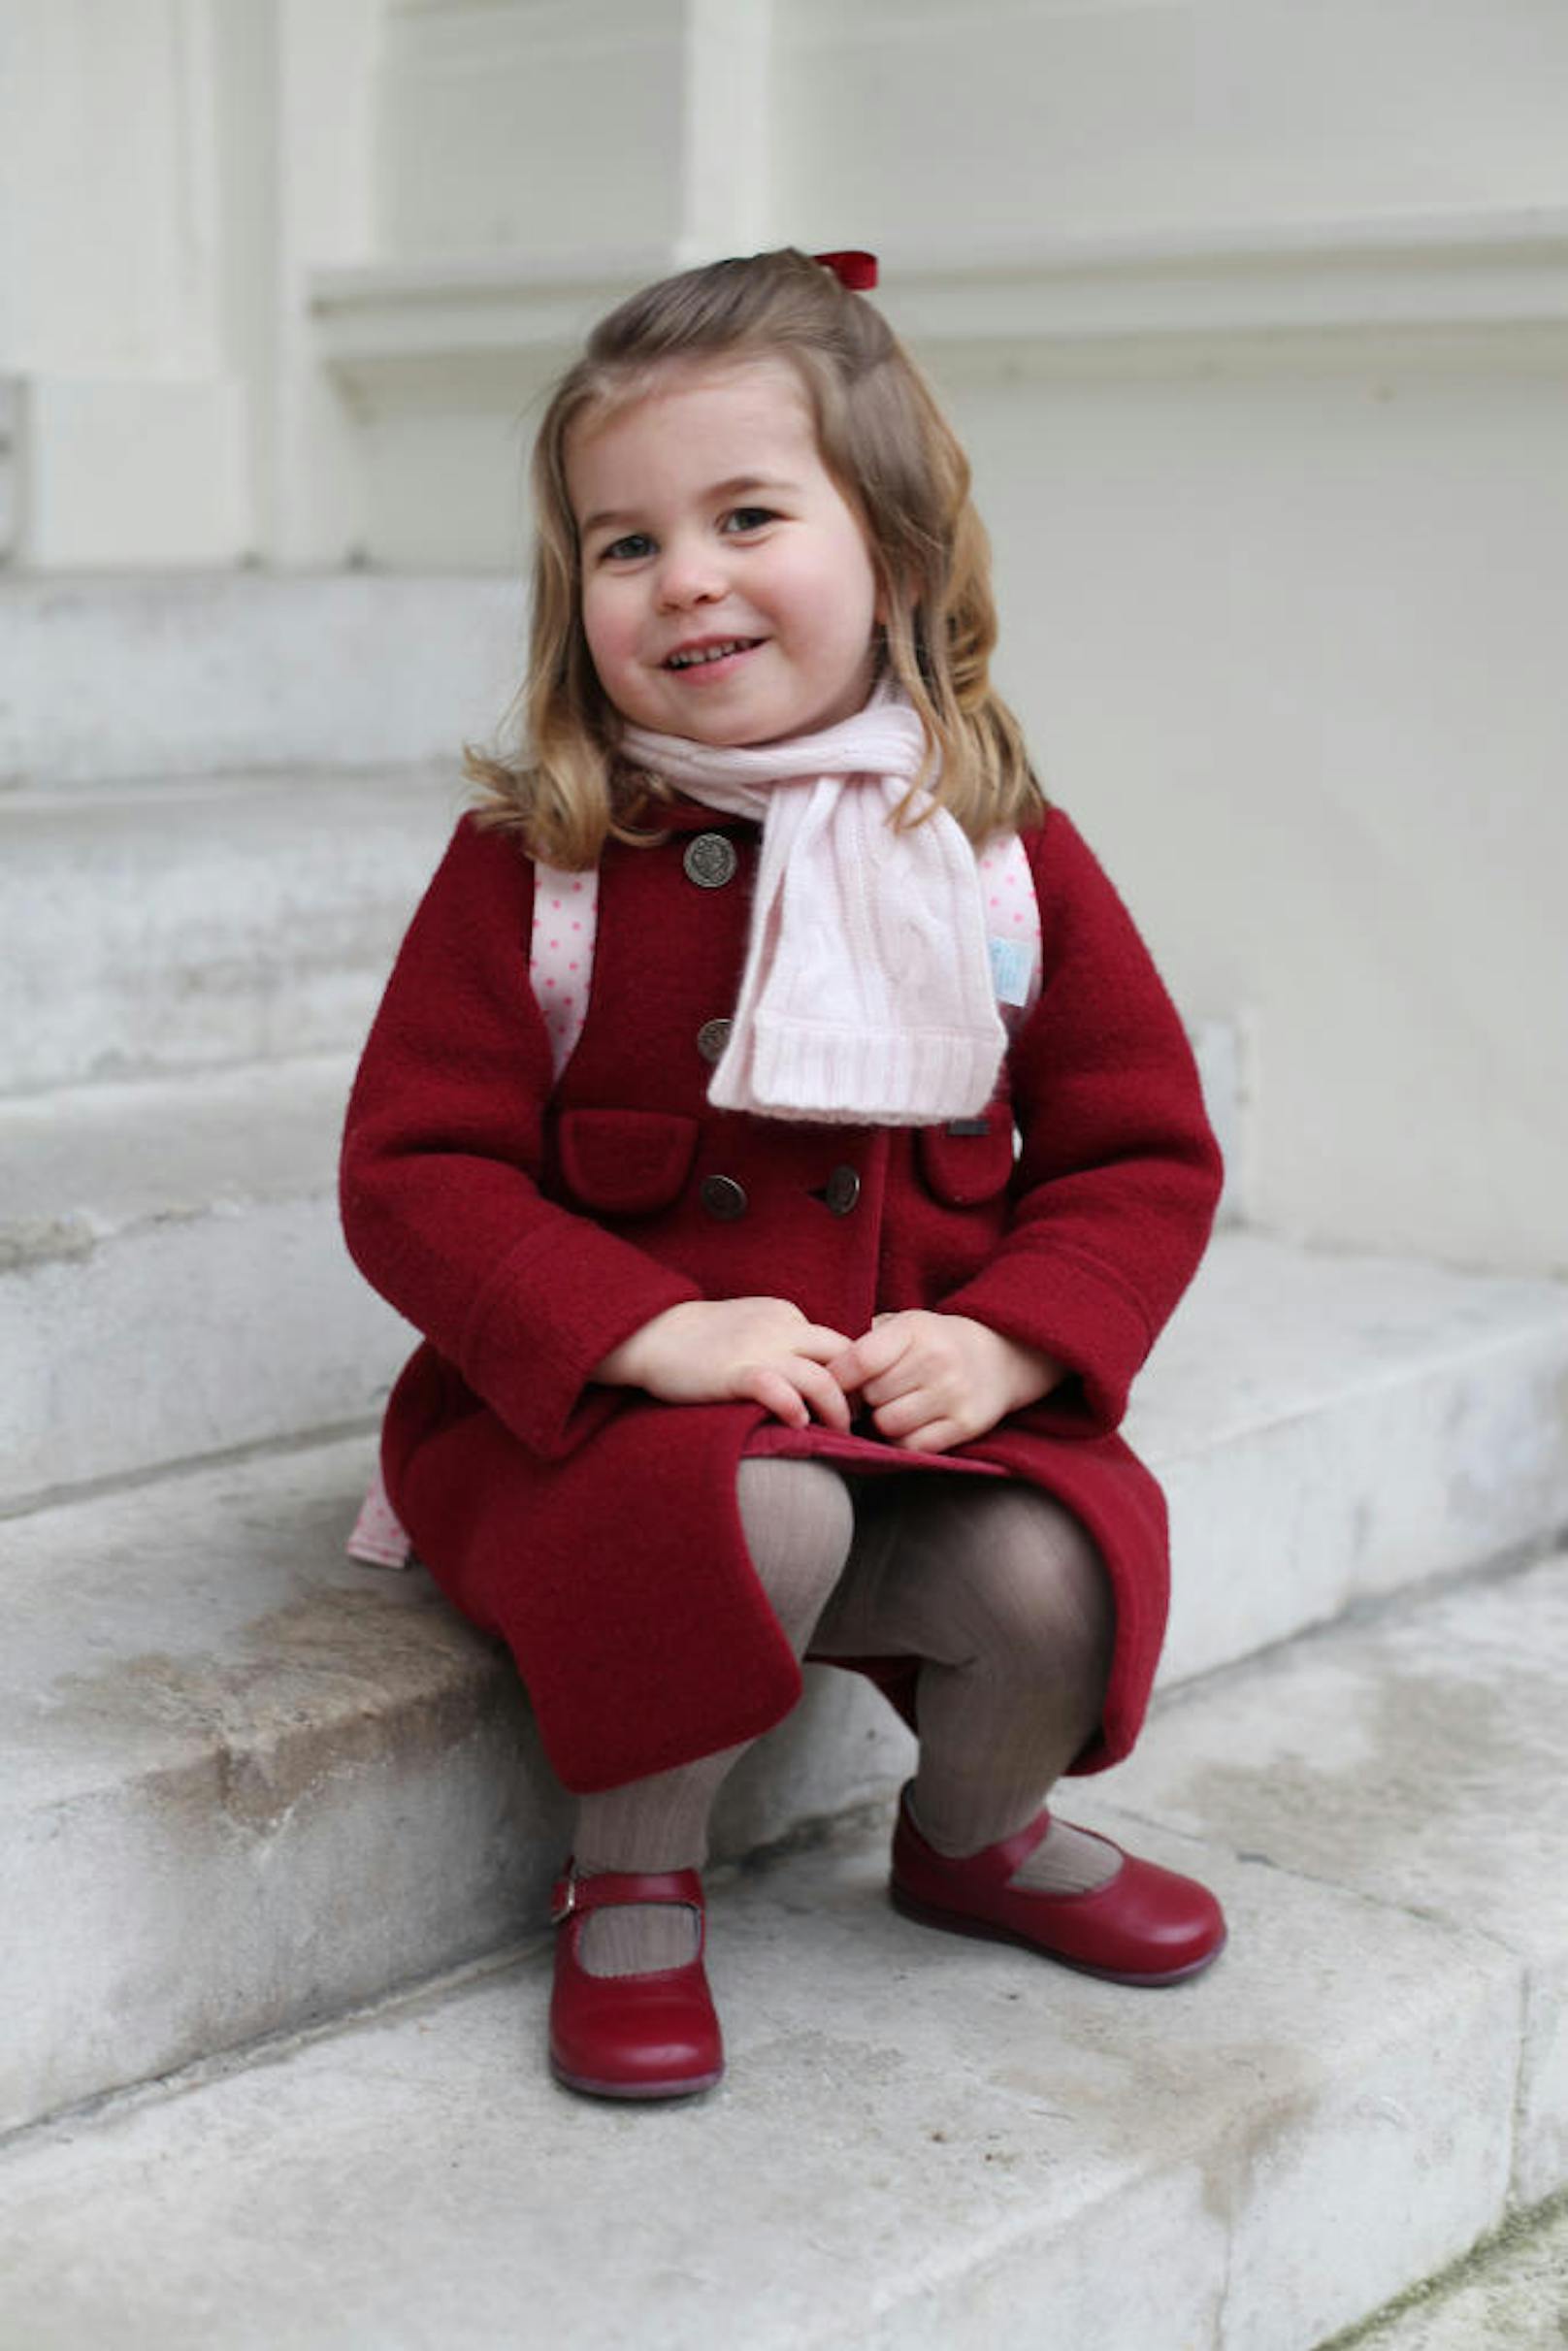 Wieder ein Bild aus dem persönlichen Fotoalbum der Royals: Mama Kate hat wieder zum Fotoapparat gegriffen. Modell ist diesmal Prinzessin Charlotte, die im Jänner 2018 ihren ersten Tag an der "Willcocks Nursery School" hatte.